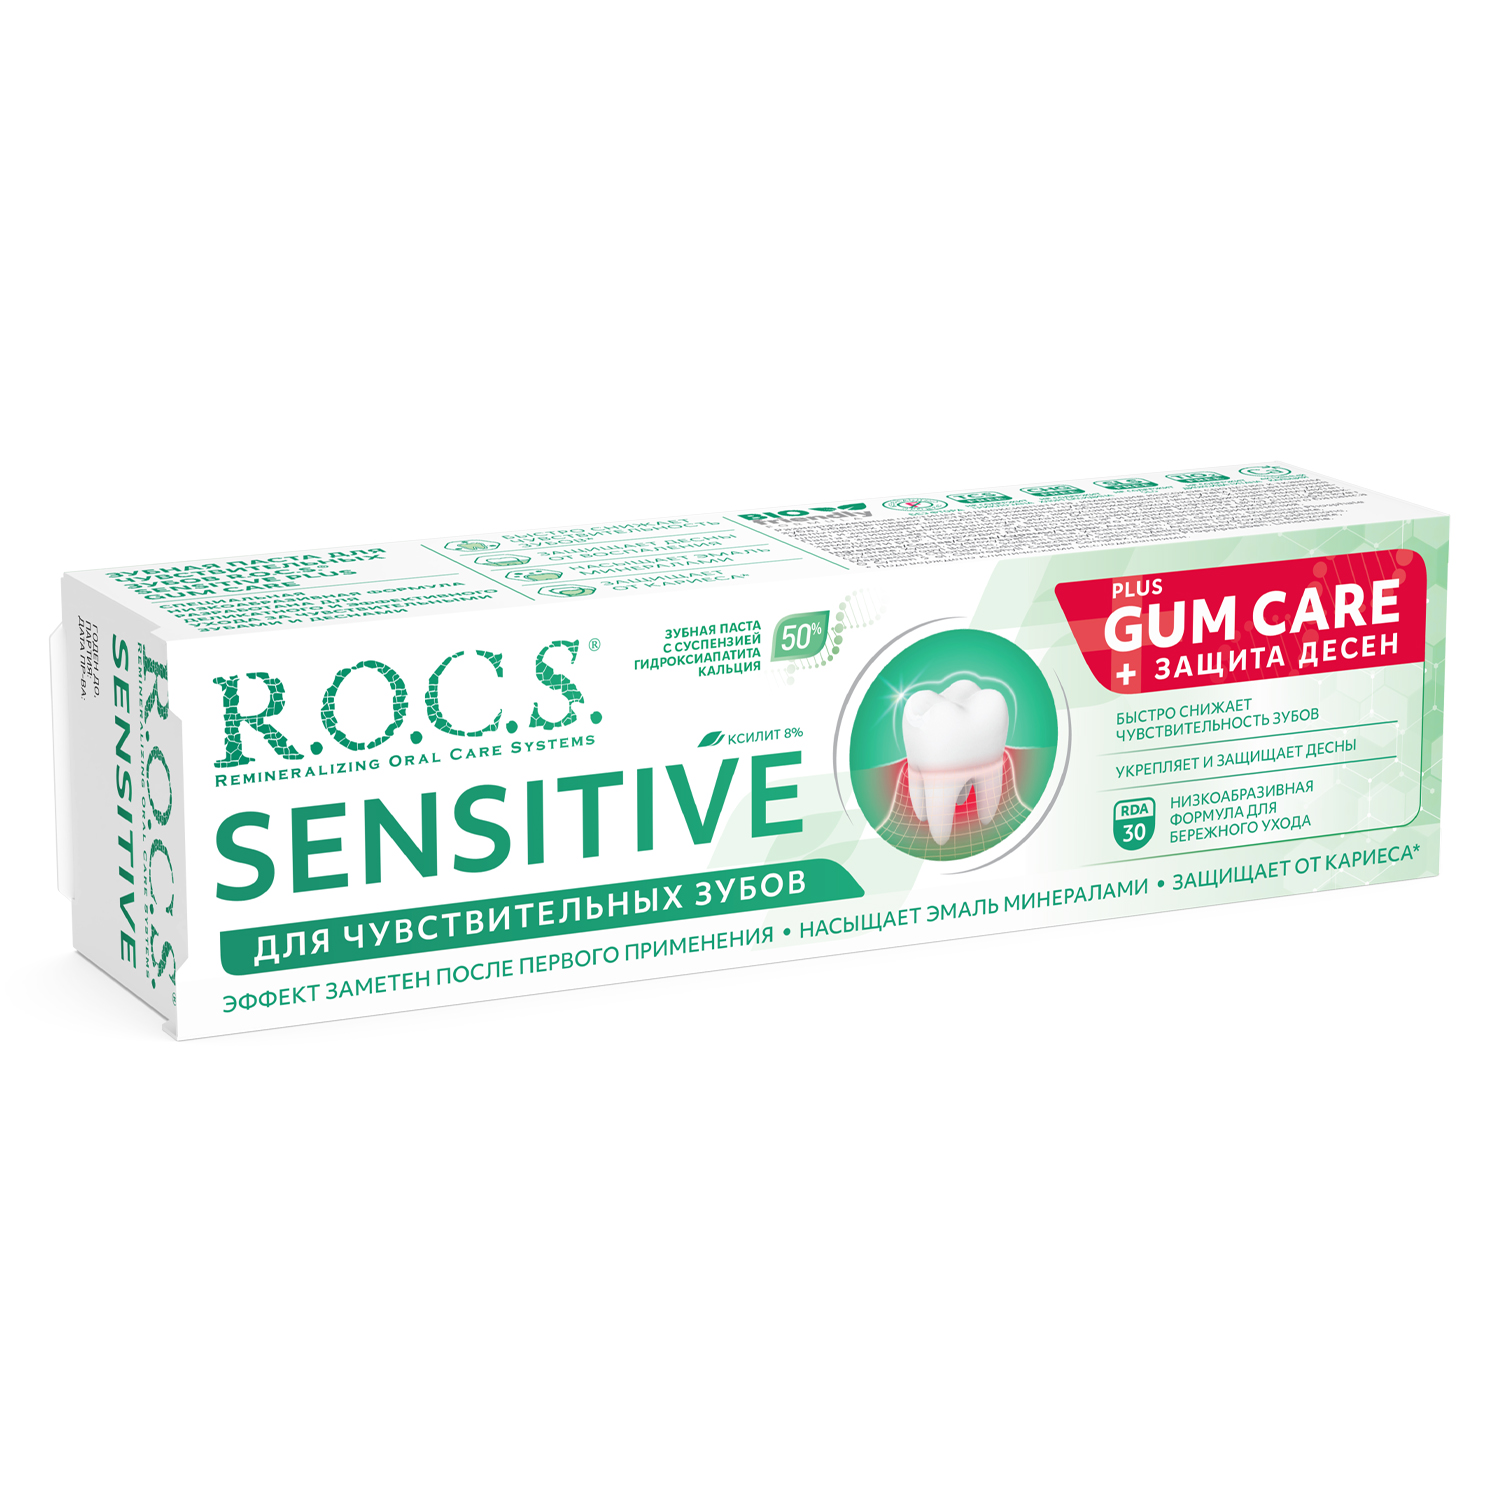 Зубная паста R.O.C.S. Sensitive для чувствительных зубов + защита десен 94г